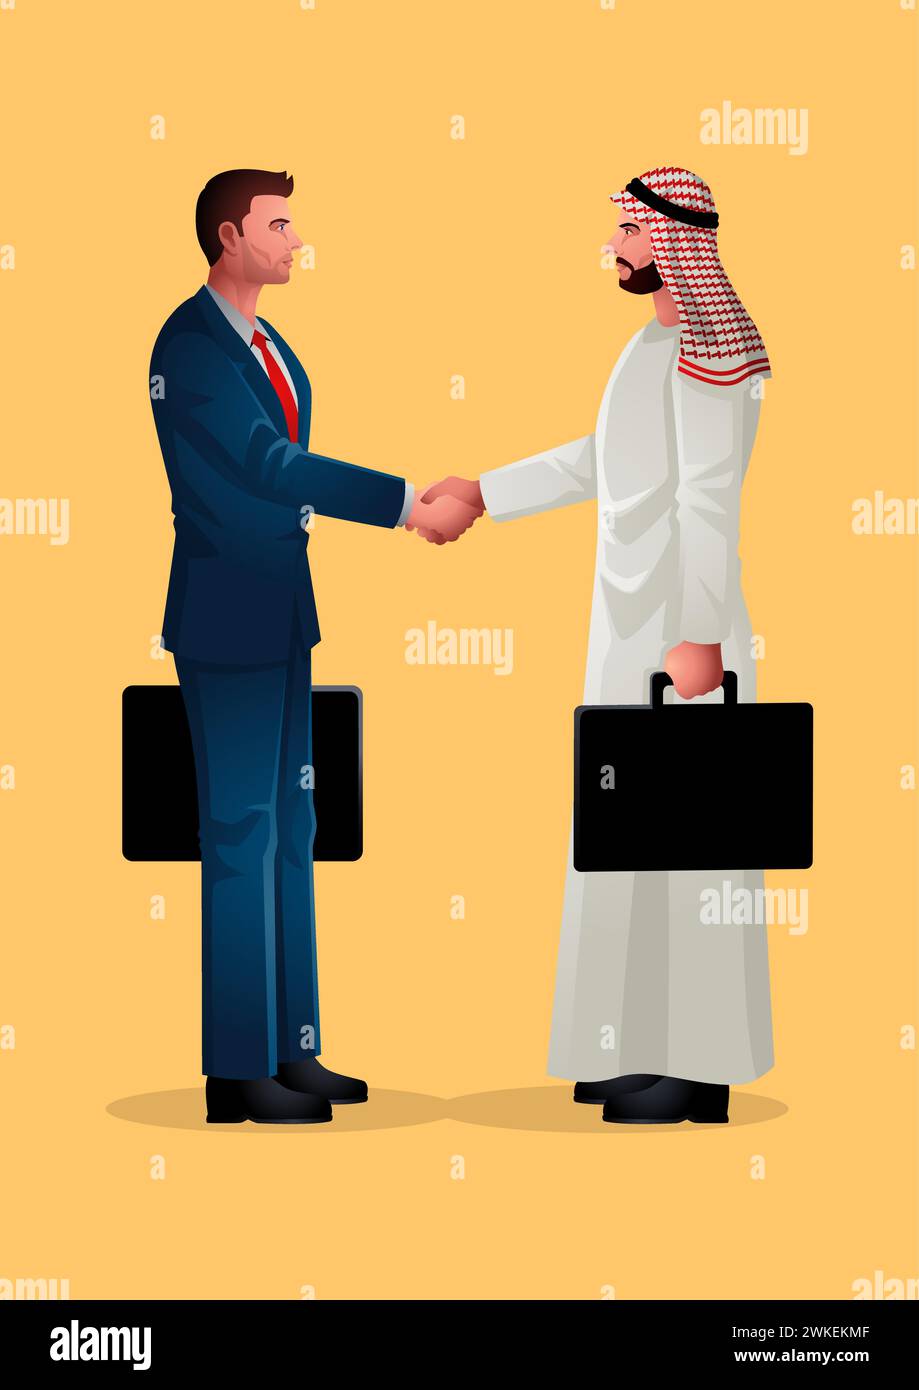 Illustration vectorielle représentant un homme d'affaires arabe engagé dans une poignée de main ferme. Symbolise la tendance croissante des investissements en provenance des pays musulmans et A Illustration de Vecteur